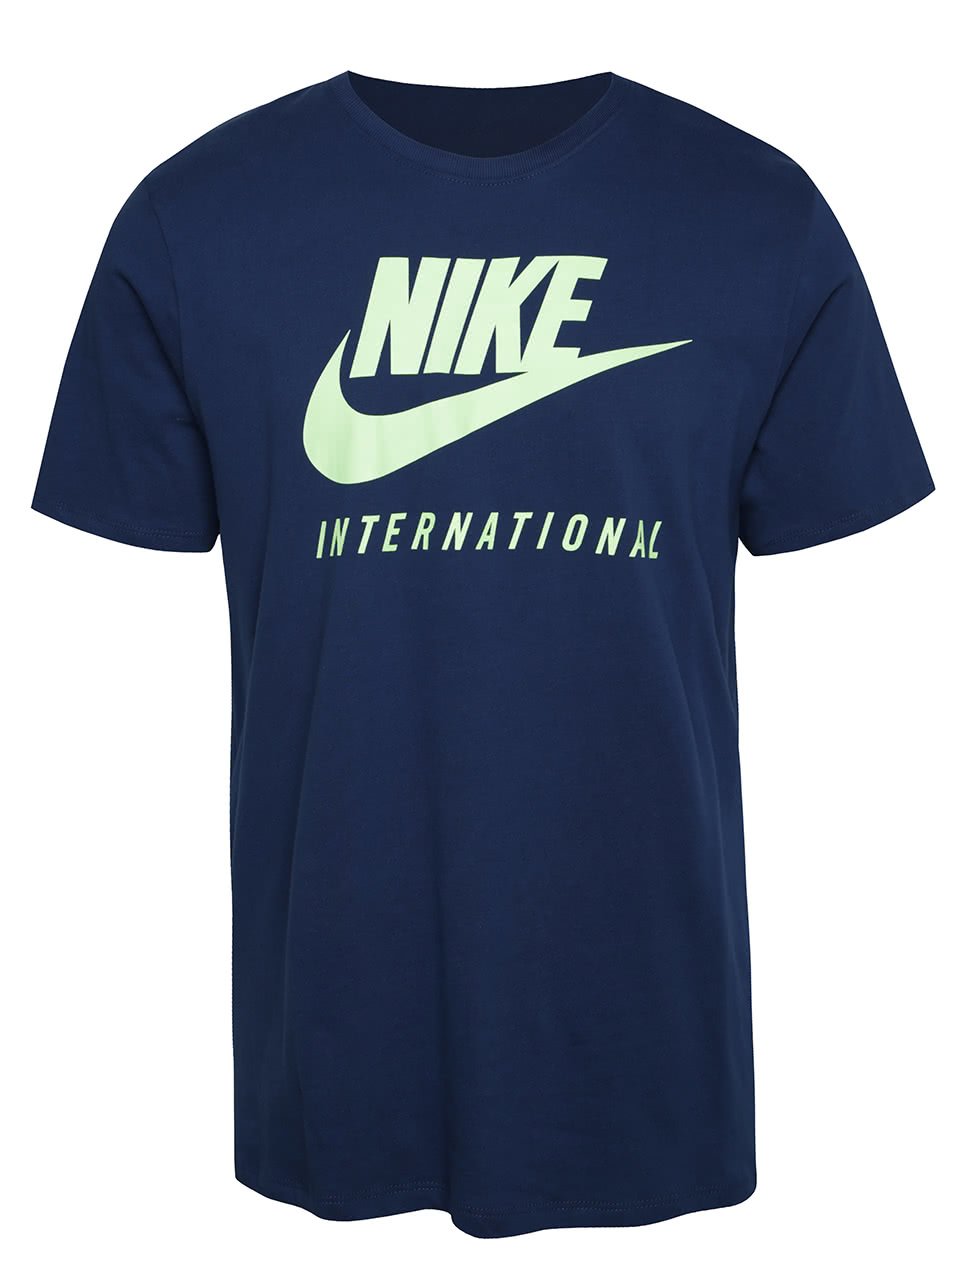 Tmavě modré pánské triko s nápisem Nike International